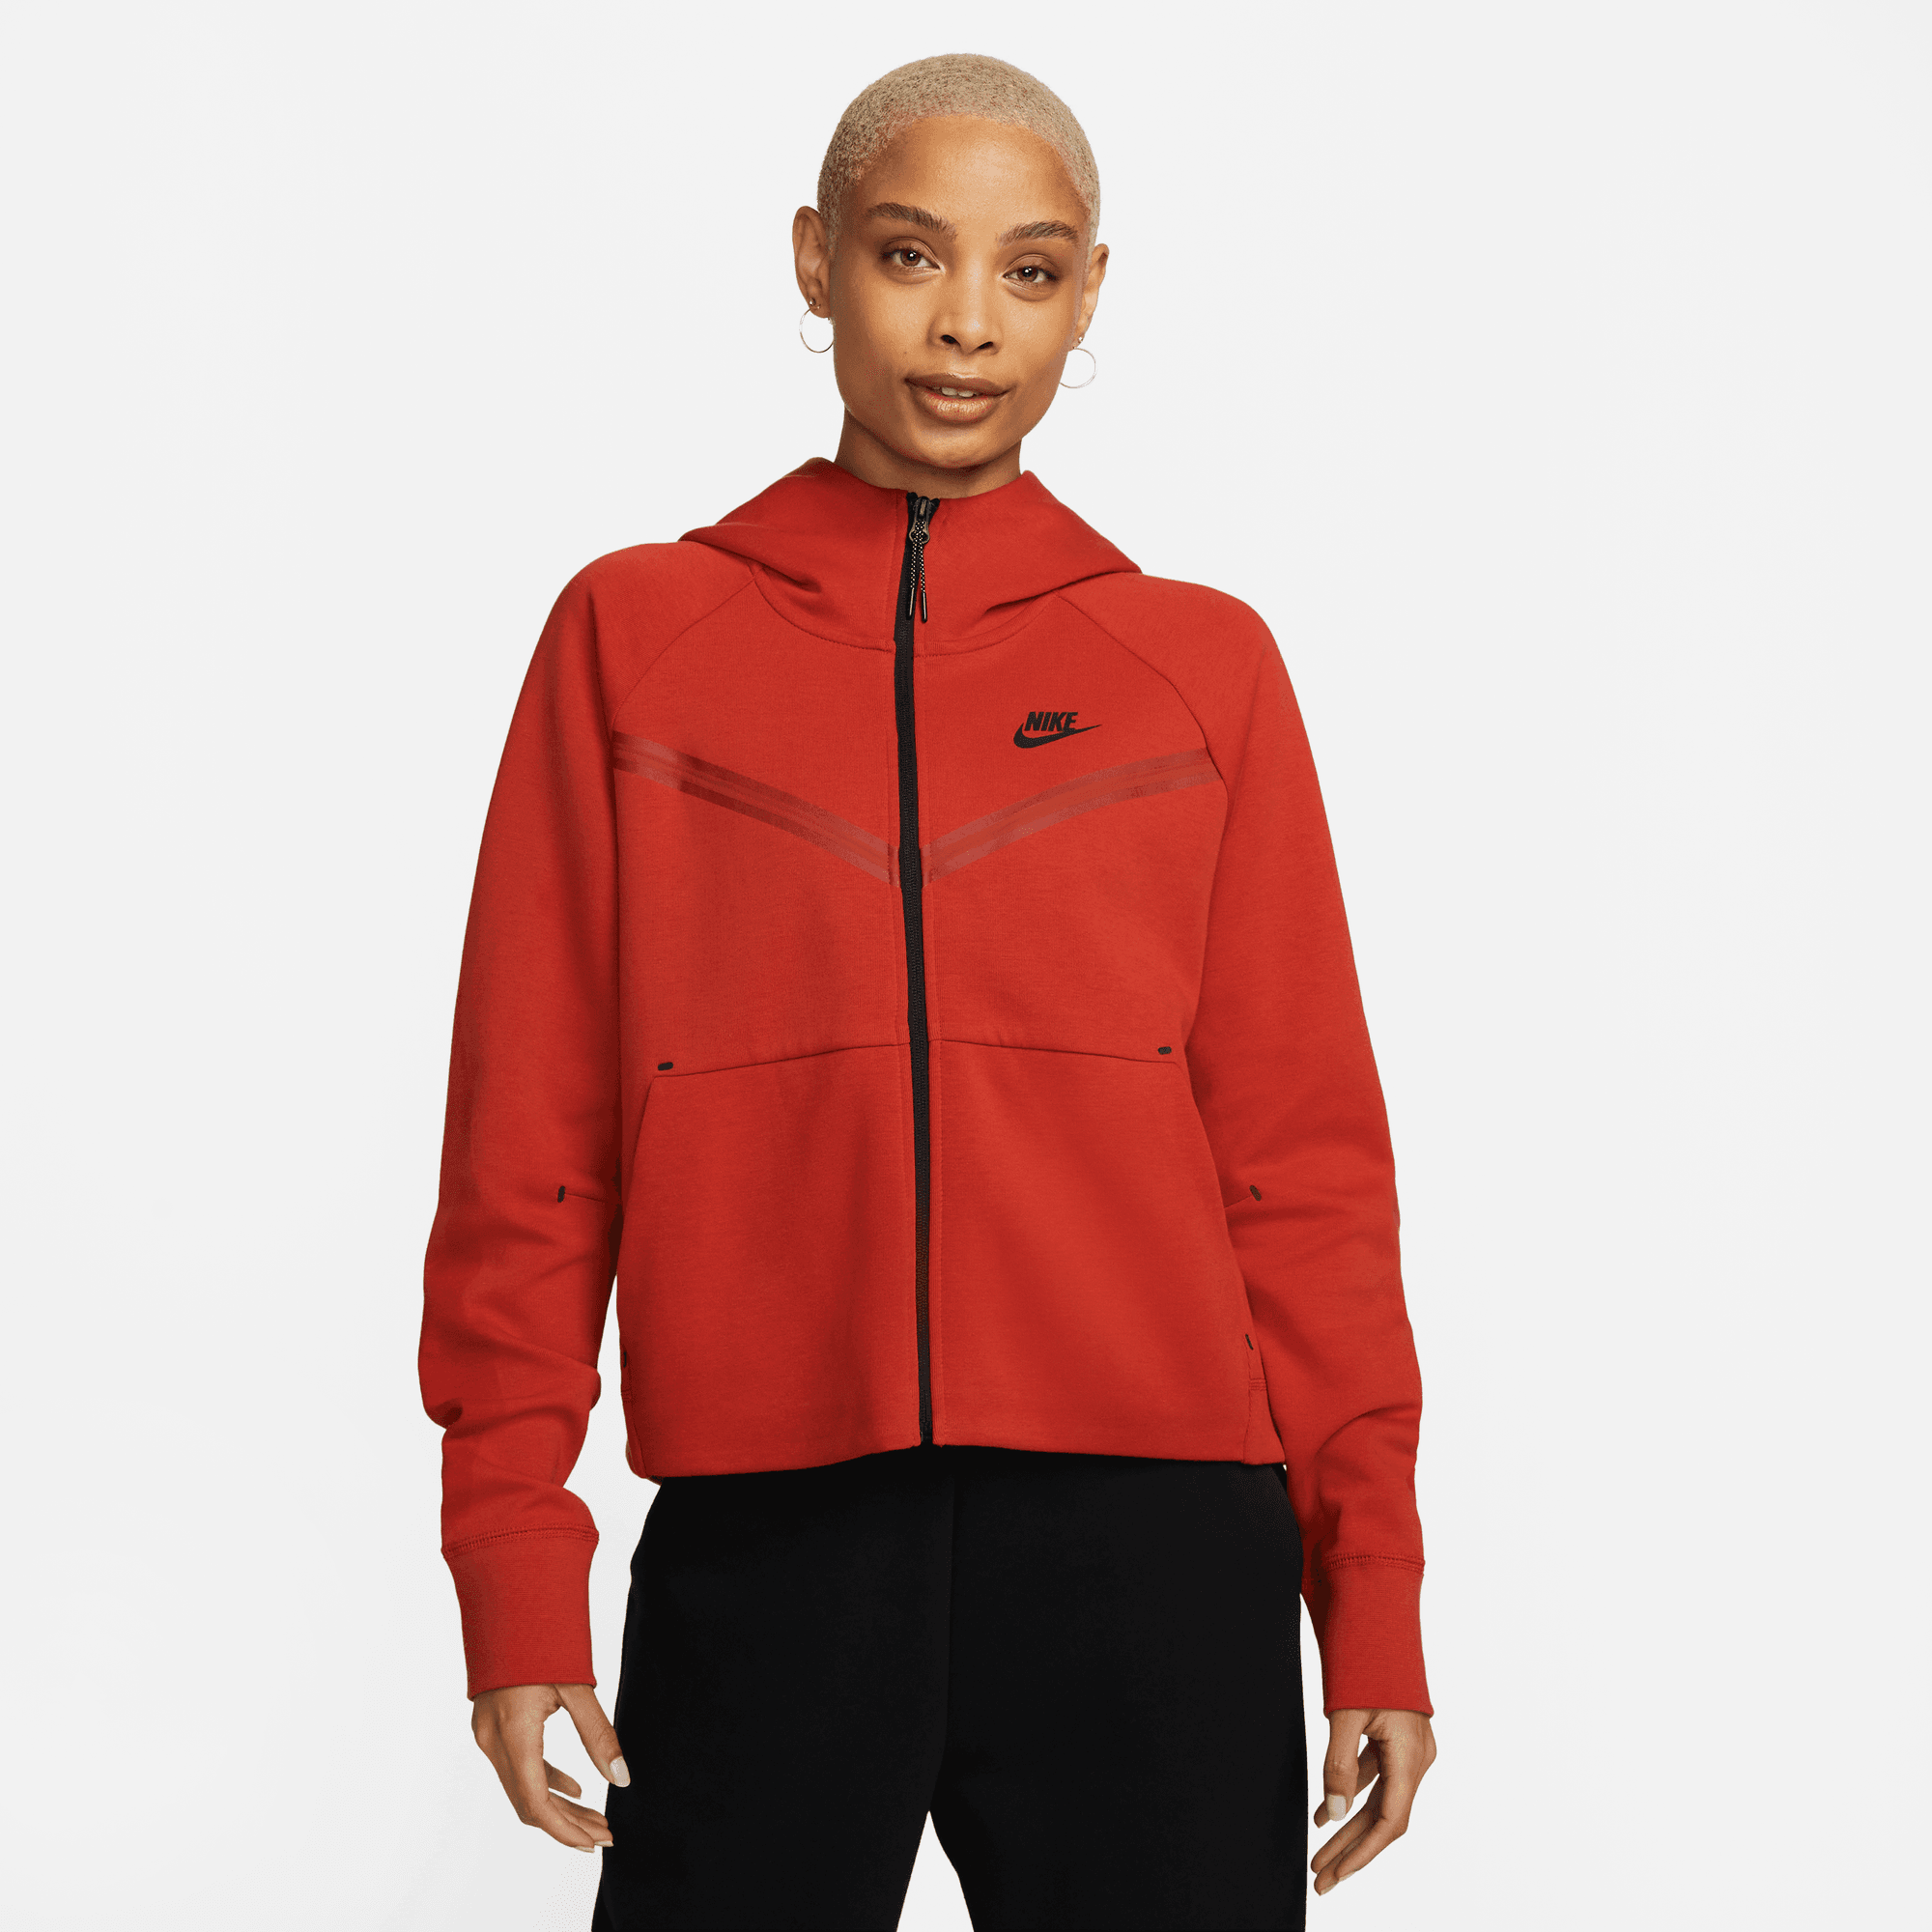 Nike Sportswear Tech Fleece Windrunner Women's Red Hoodie – Puffer